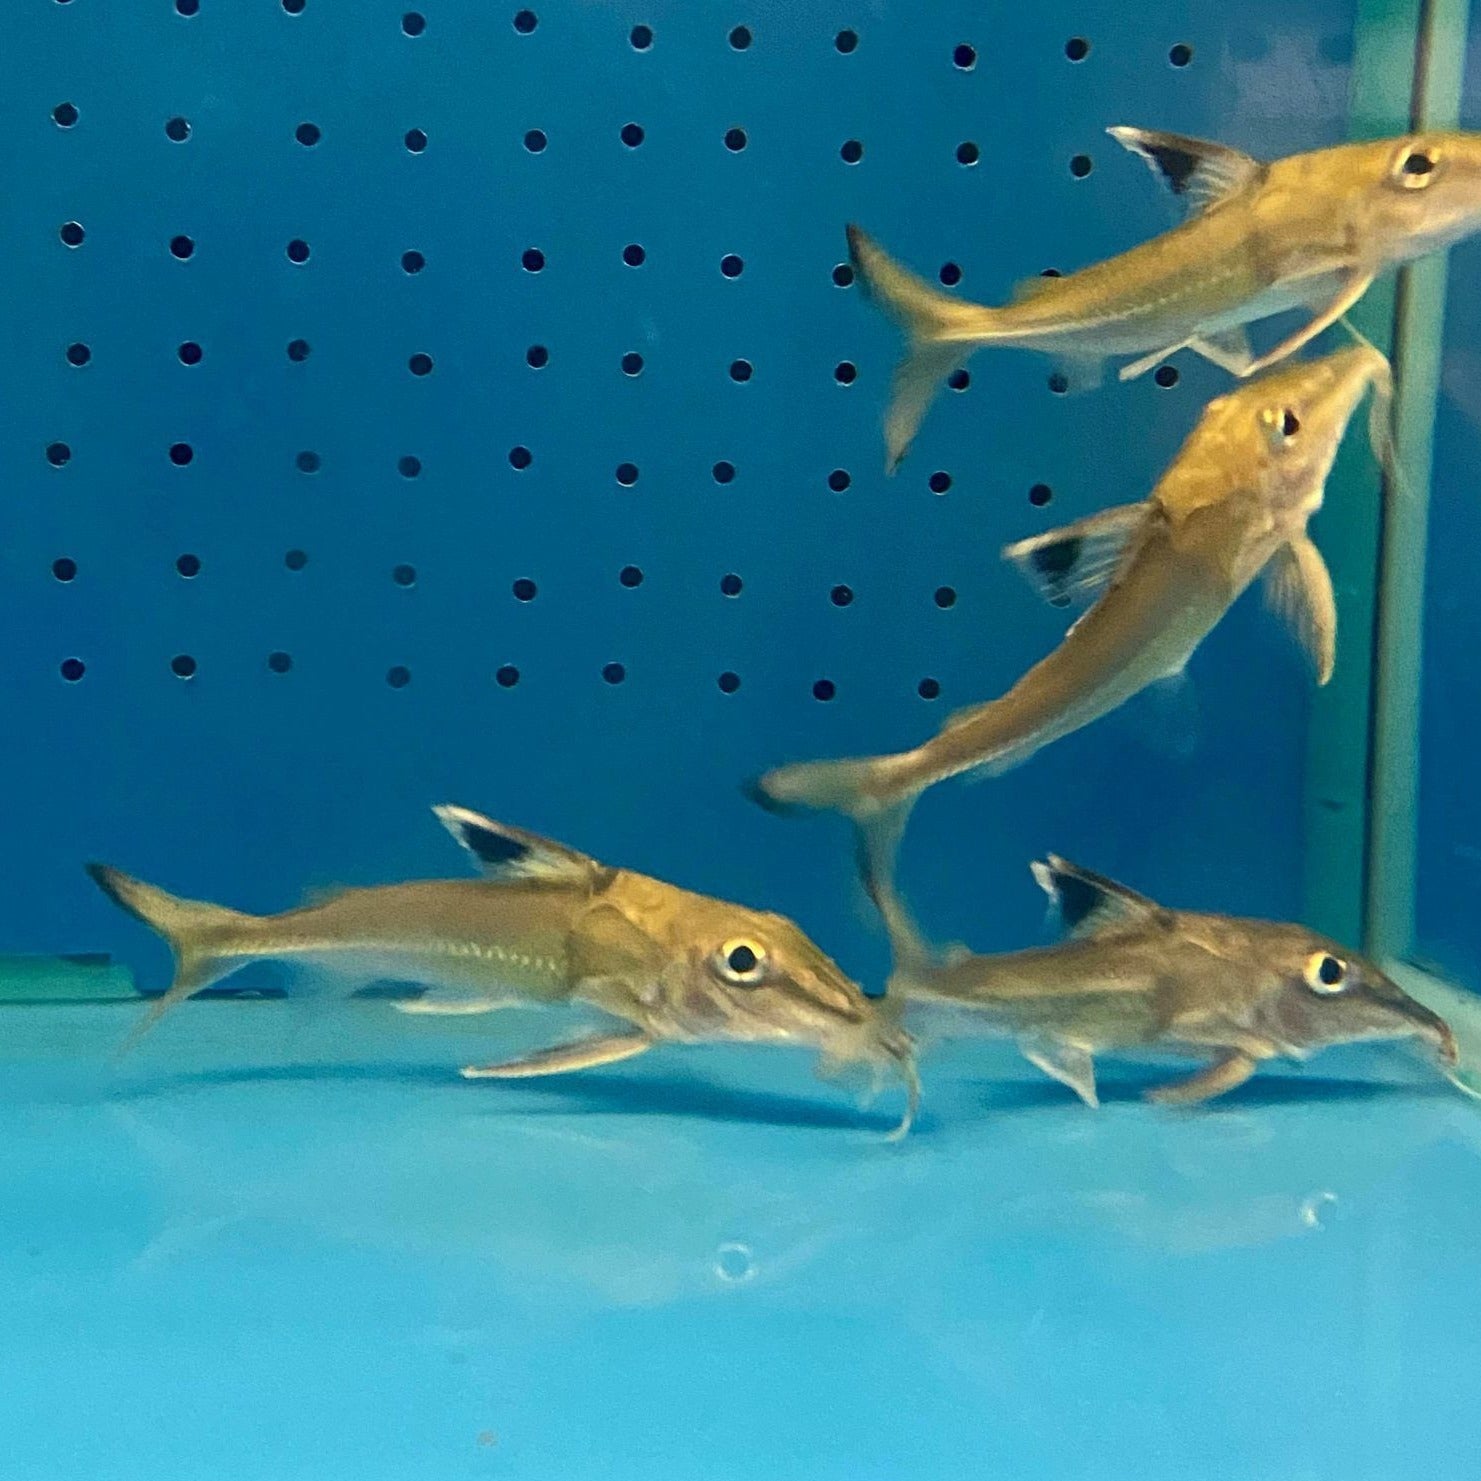 Essequibo Thorny Catfish (Doras micropoeus)